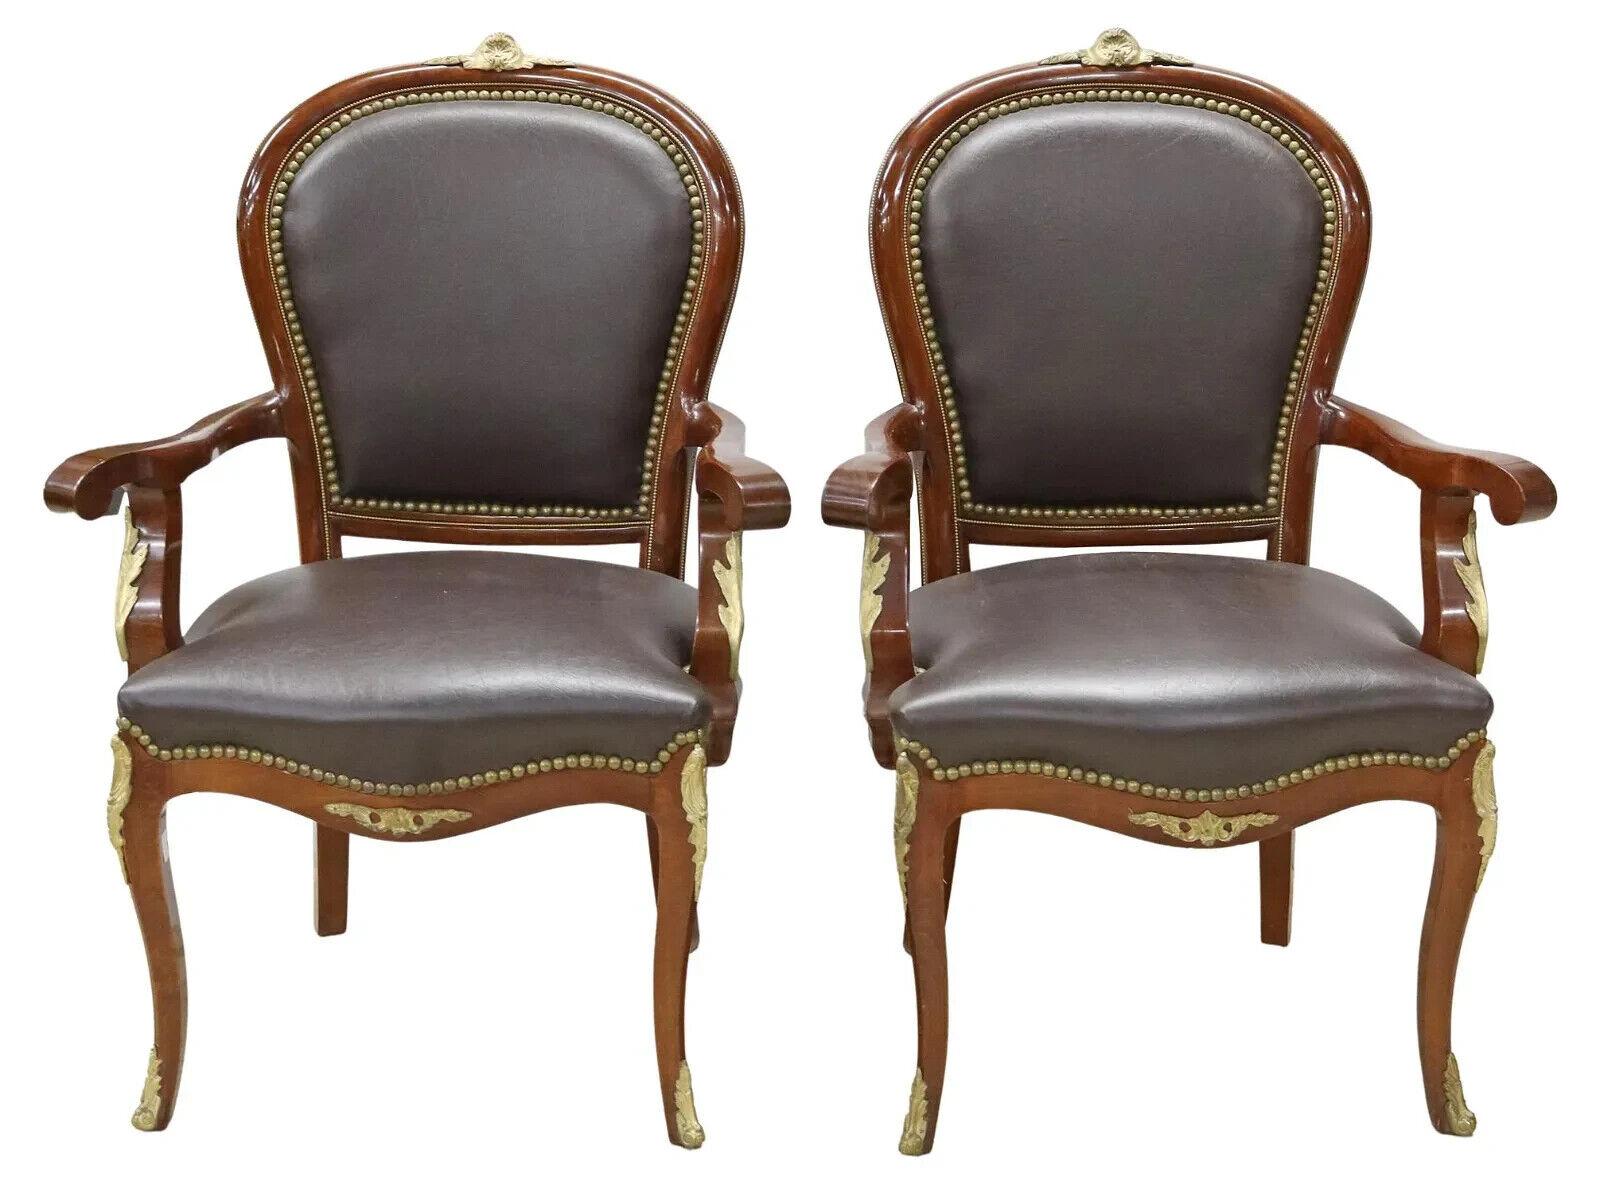 Magnifique Fauteuils, (2) Style Louis XV Noir, Tapissé, Cimier, Garniture de tête de clou, Vintage, 20ème siècle !  Voir d'autres chaises de bureau assorties !

Paire de fauteuils de style Louis XV, 20e s., châssis en acajou, crête en forme de